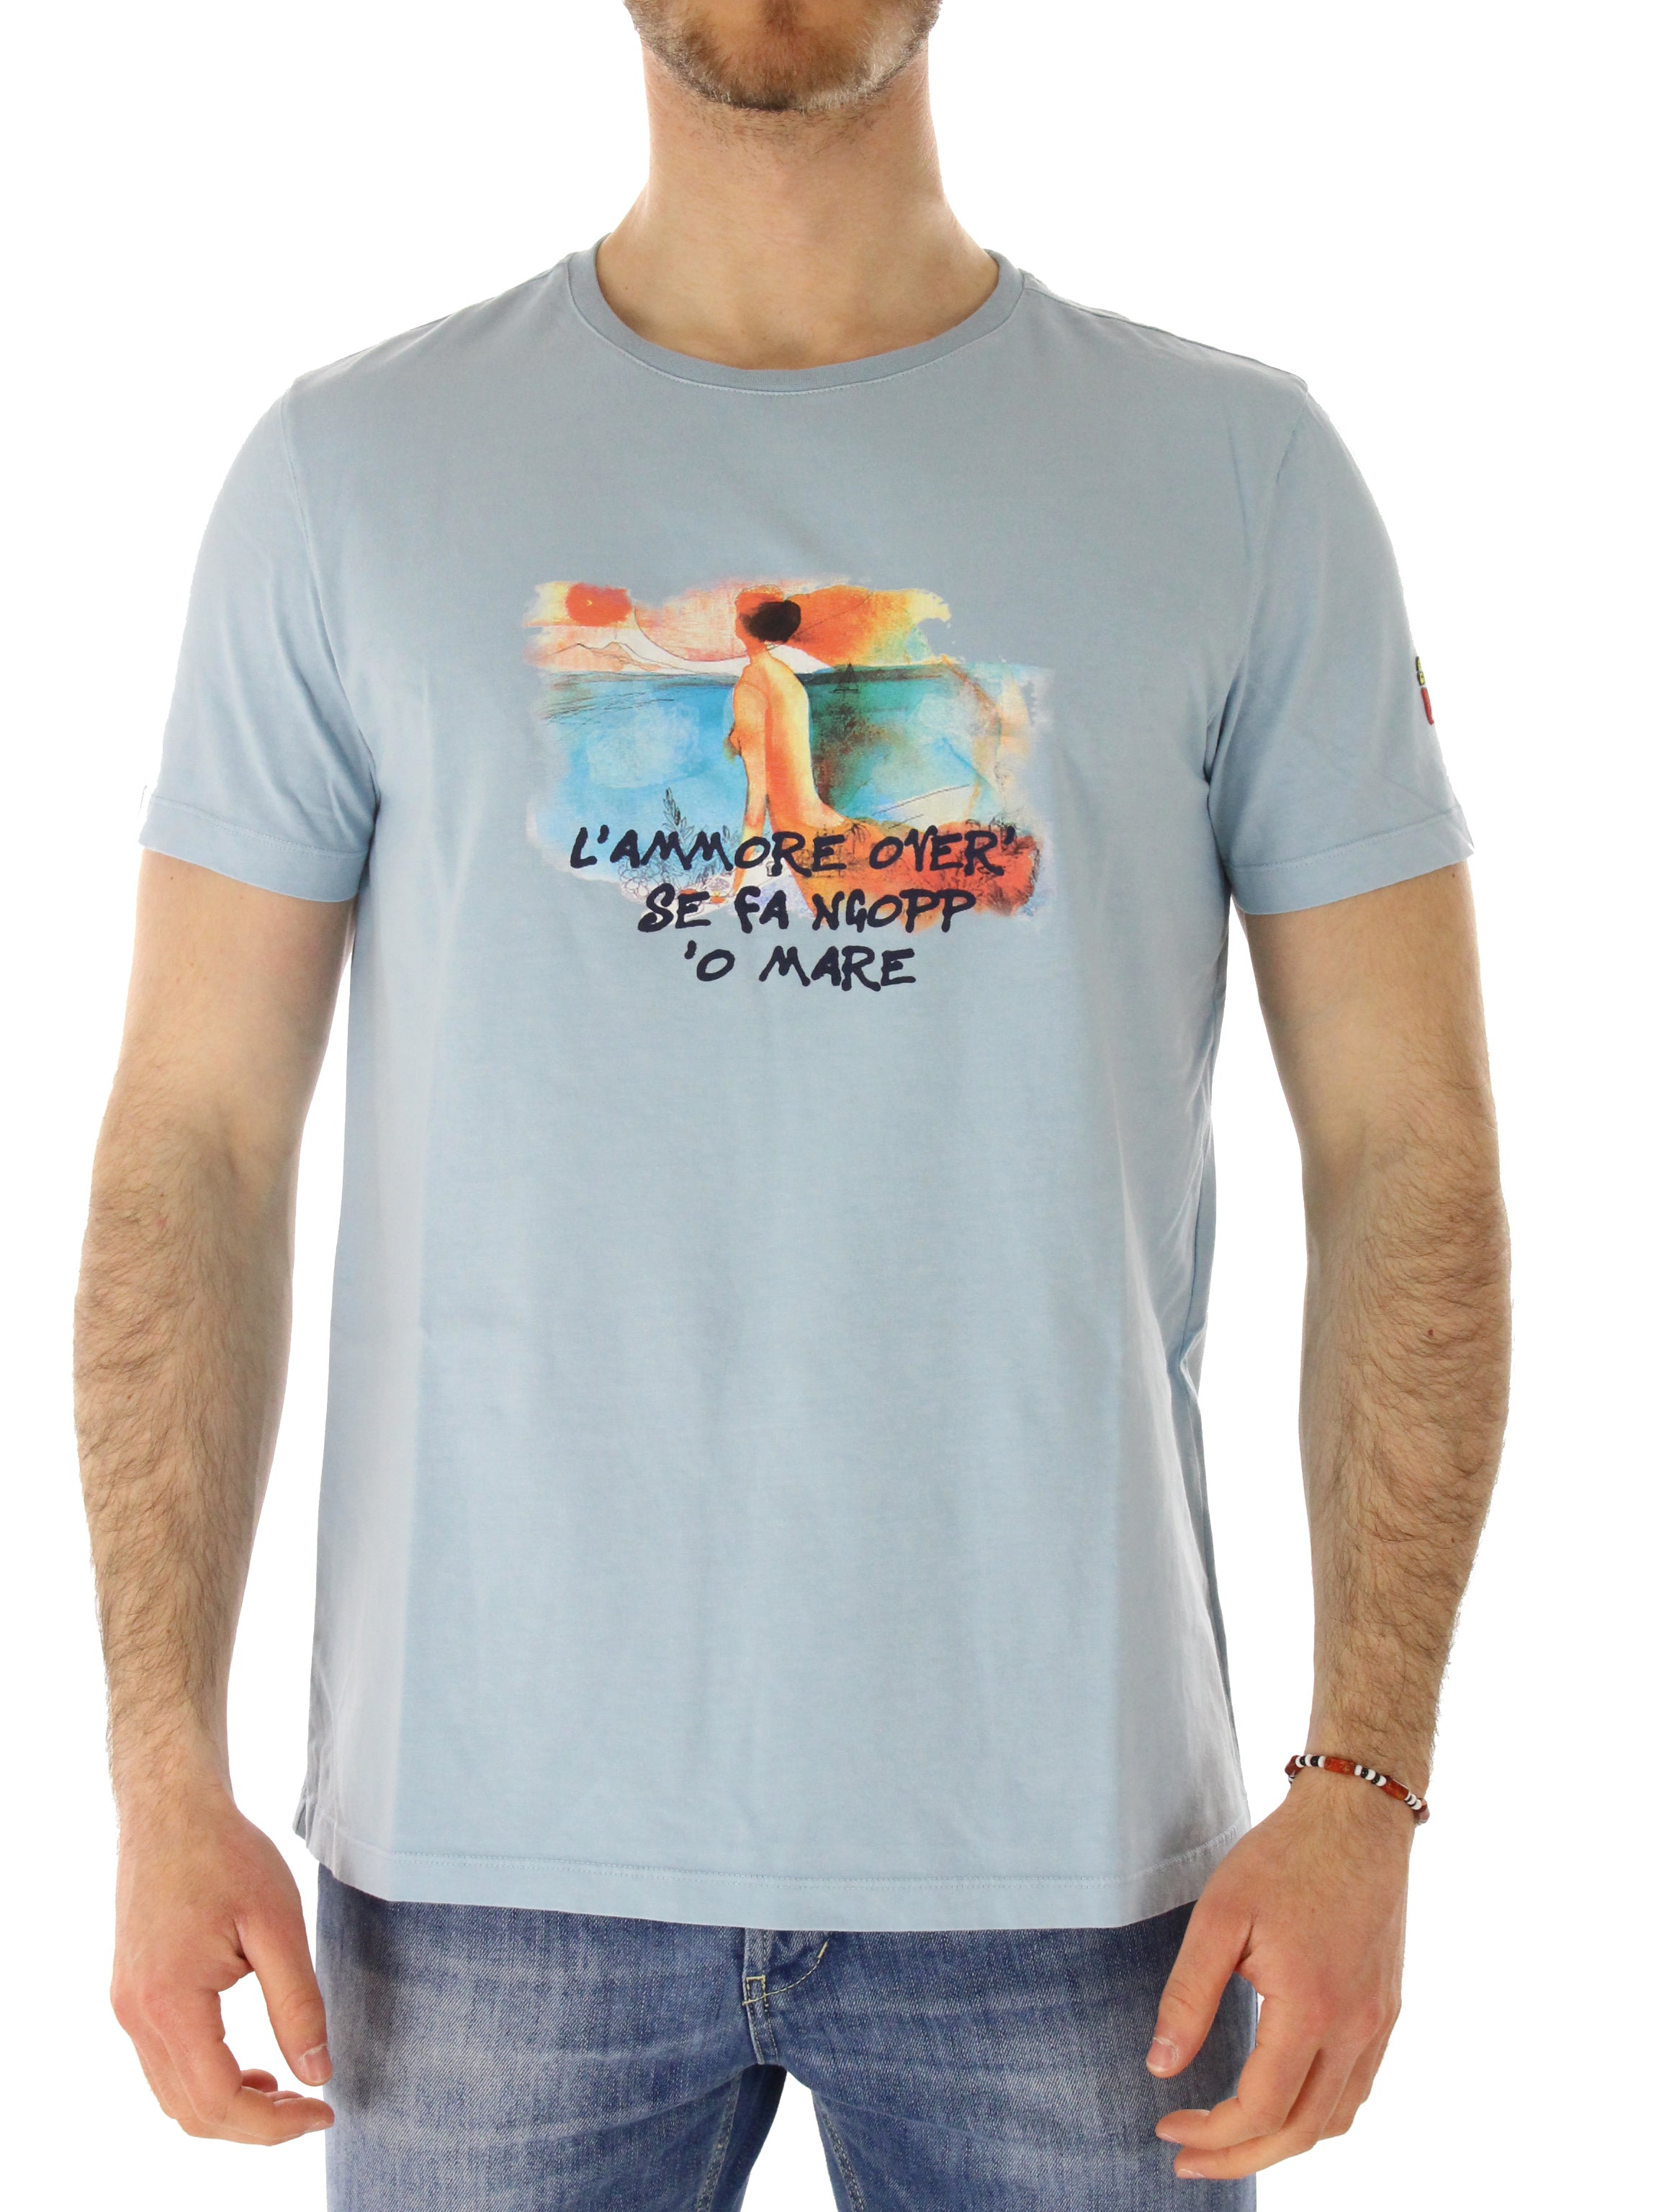 Cooperativa pescatori posillipo t-shirt m/m